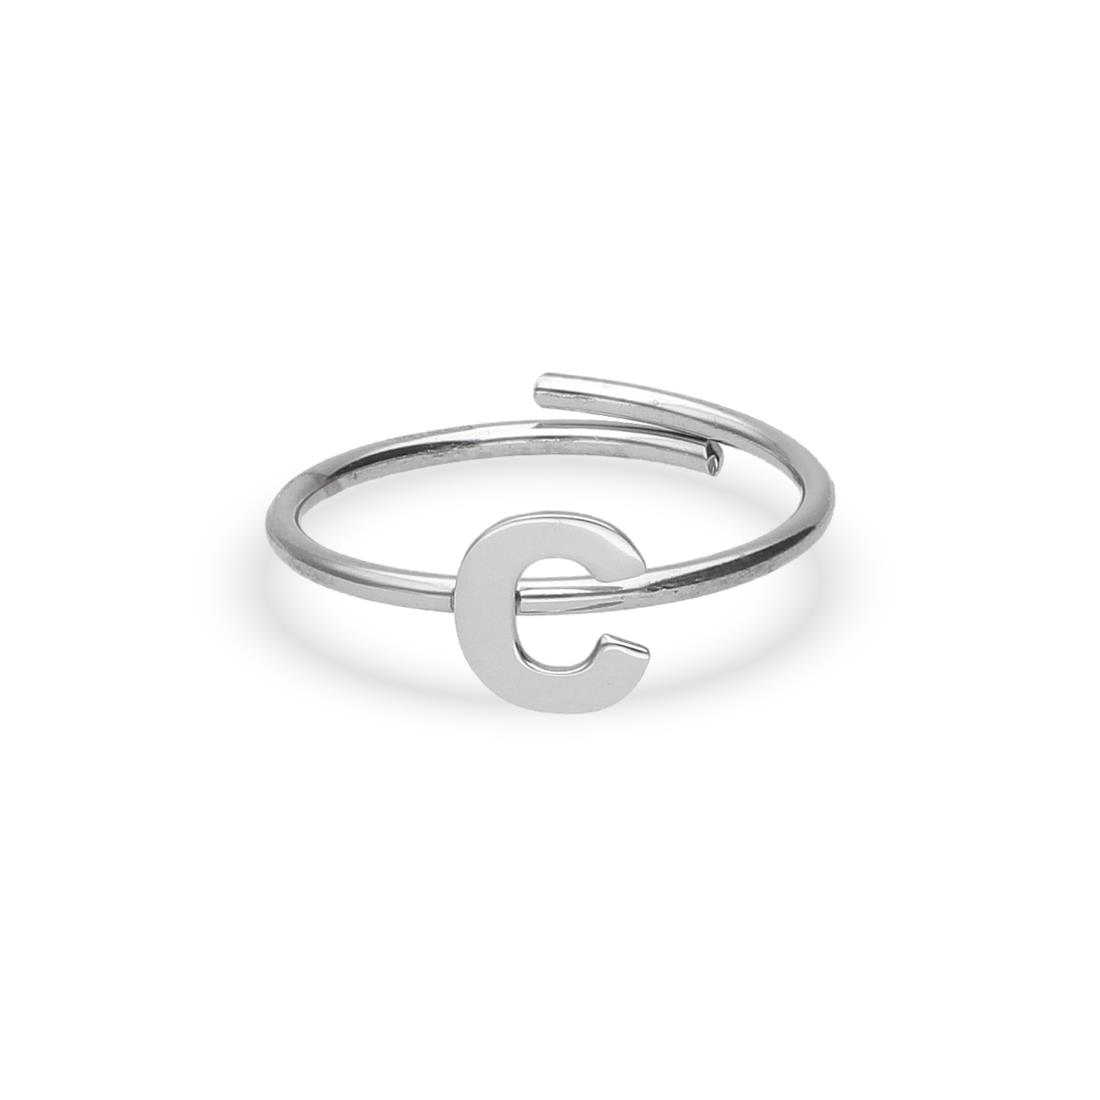 Letter C rhodium plated silver ring - DESIDERI PREZIOSI